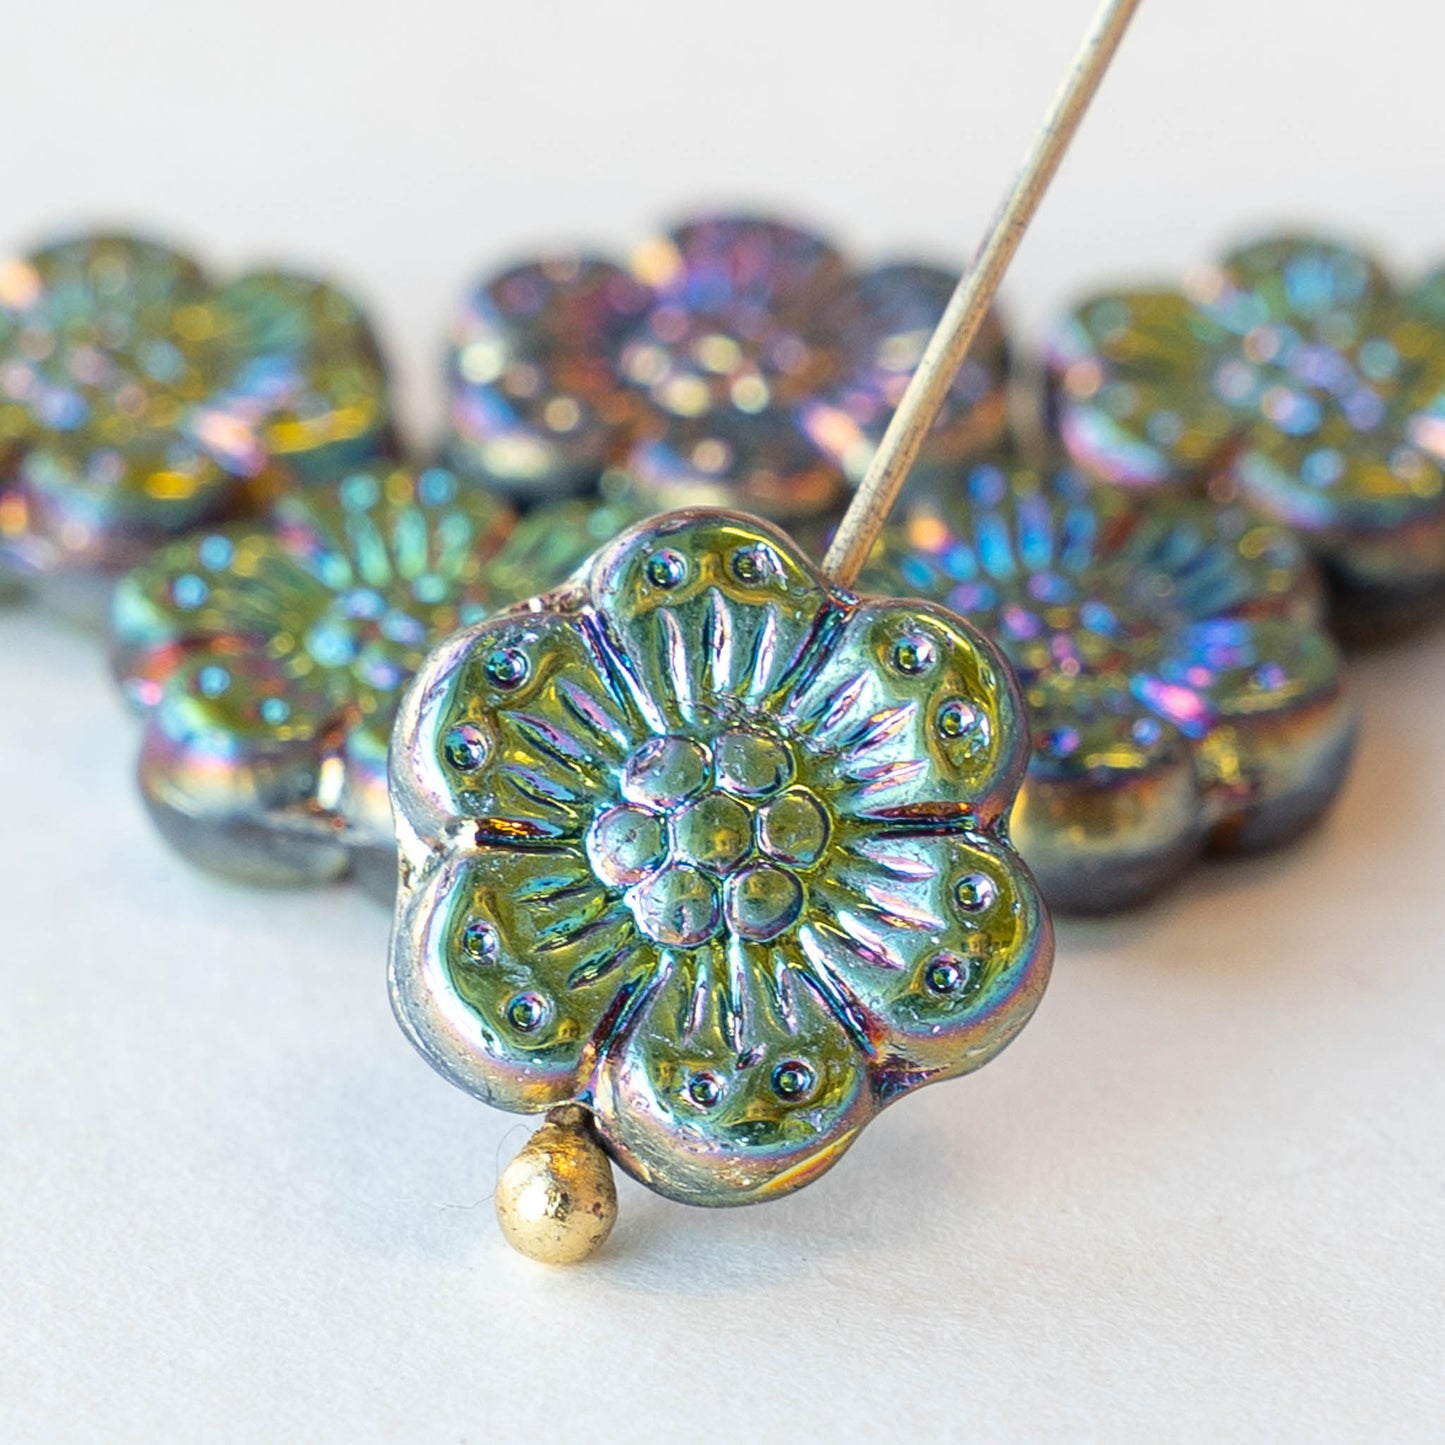 14mm Anemone Flower Beads -  Metallic Iris - 10 Beads